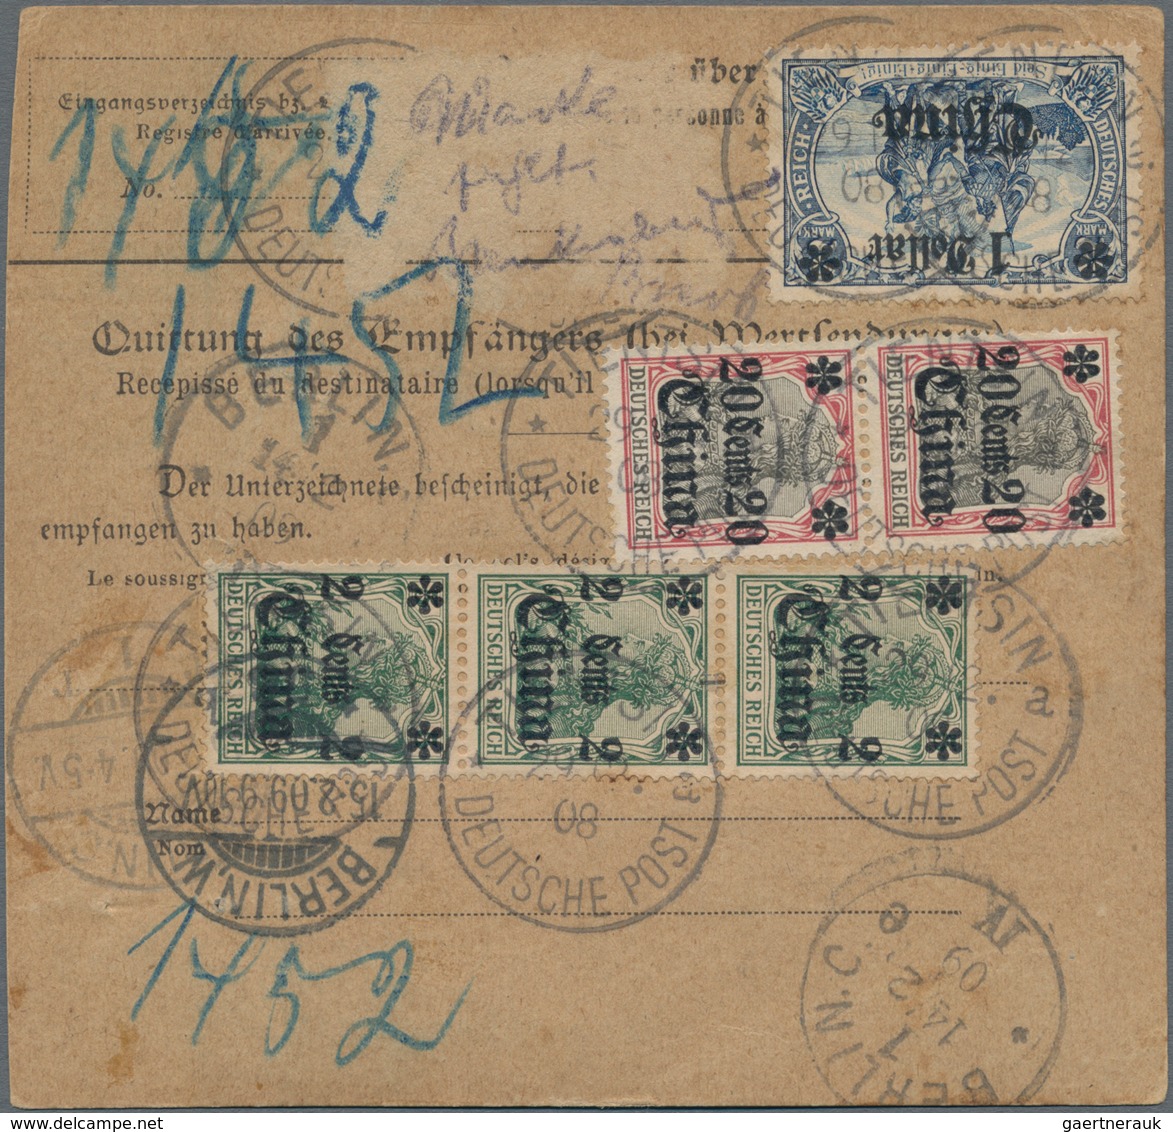 Deutsche Post In China: 1908, Selt. Wertpaketkarte Frank. Mit 3x 2 C. Grün, 2x 20 C. Und 1x 1 $ Auf - China (kantoren)